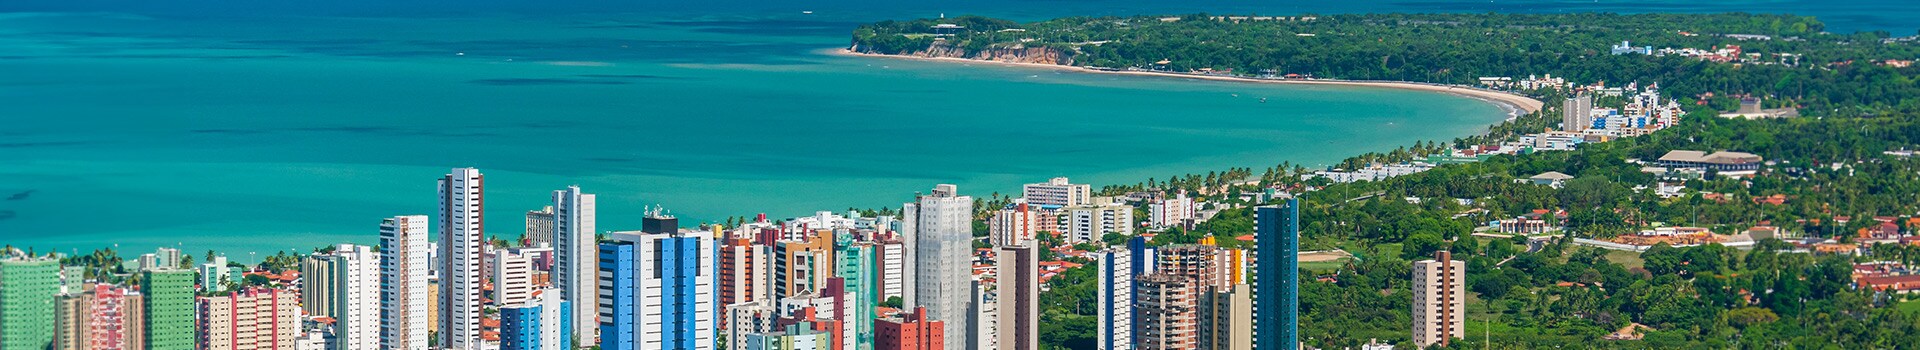 Rio de janeiro - Internacional presidente castro pinto - paraíba